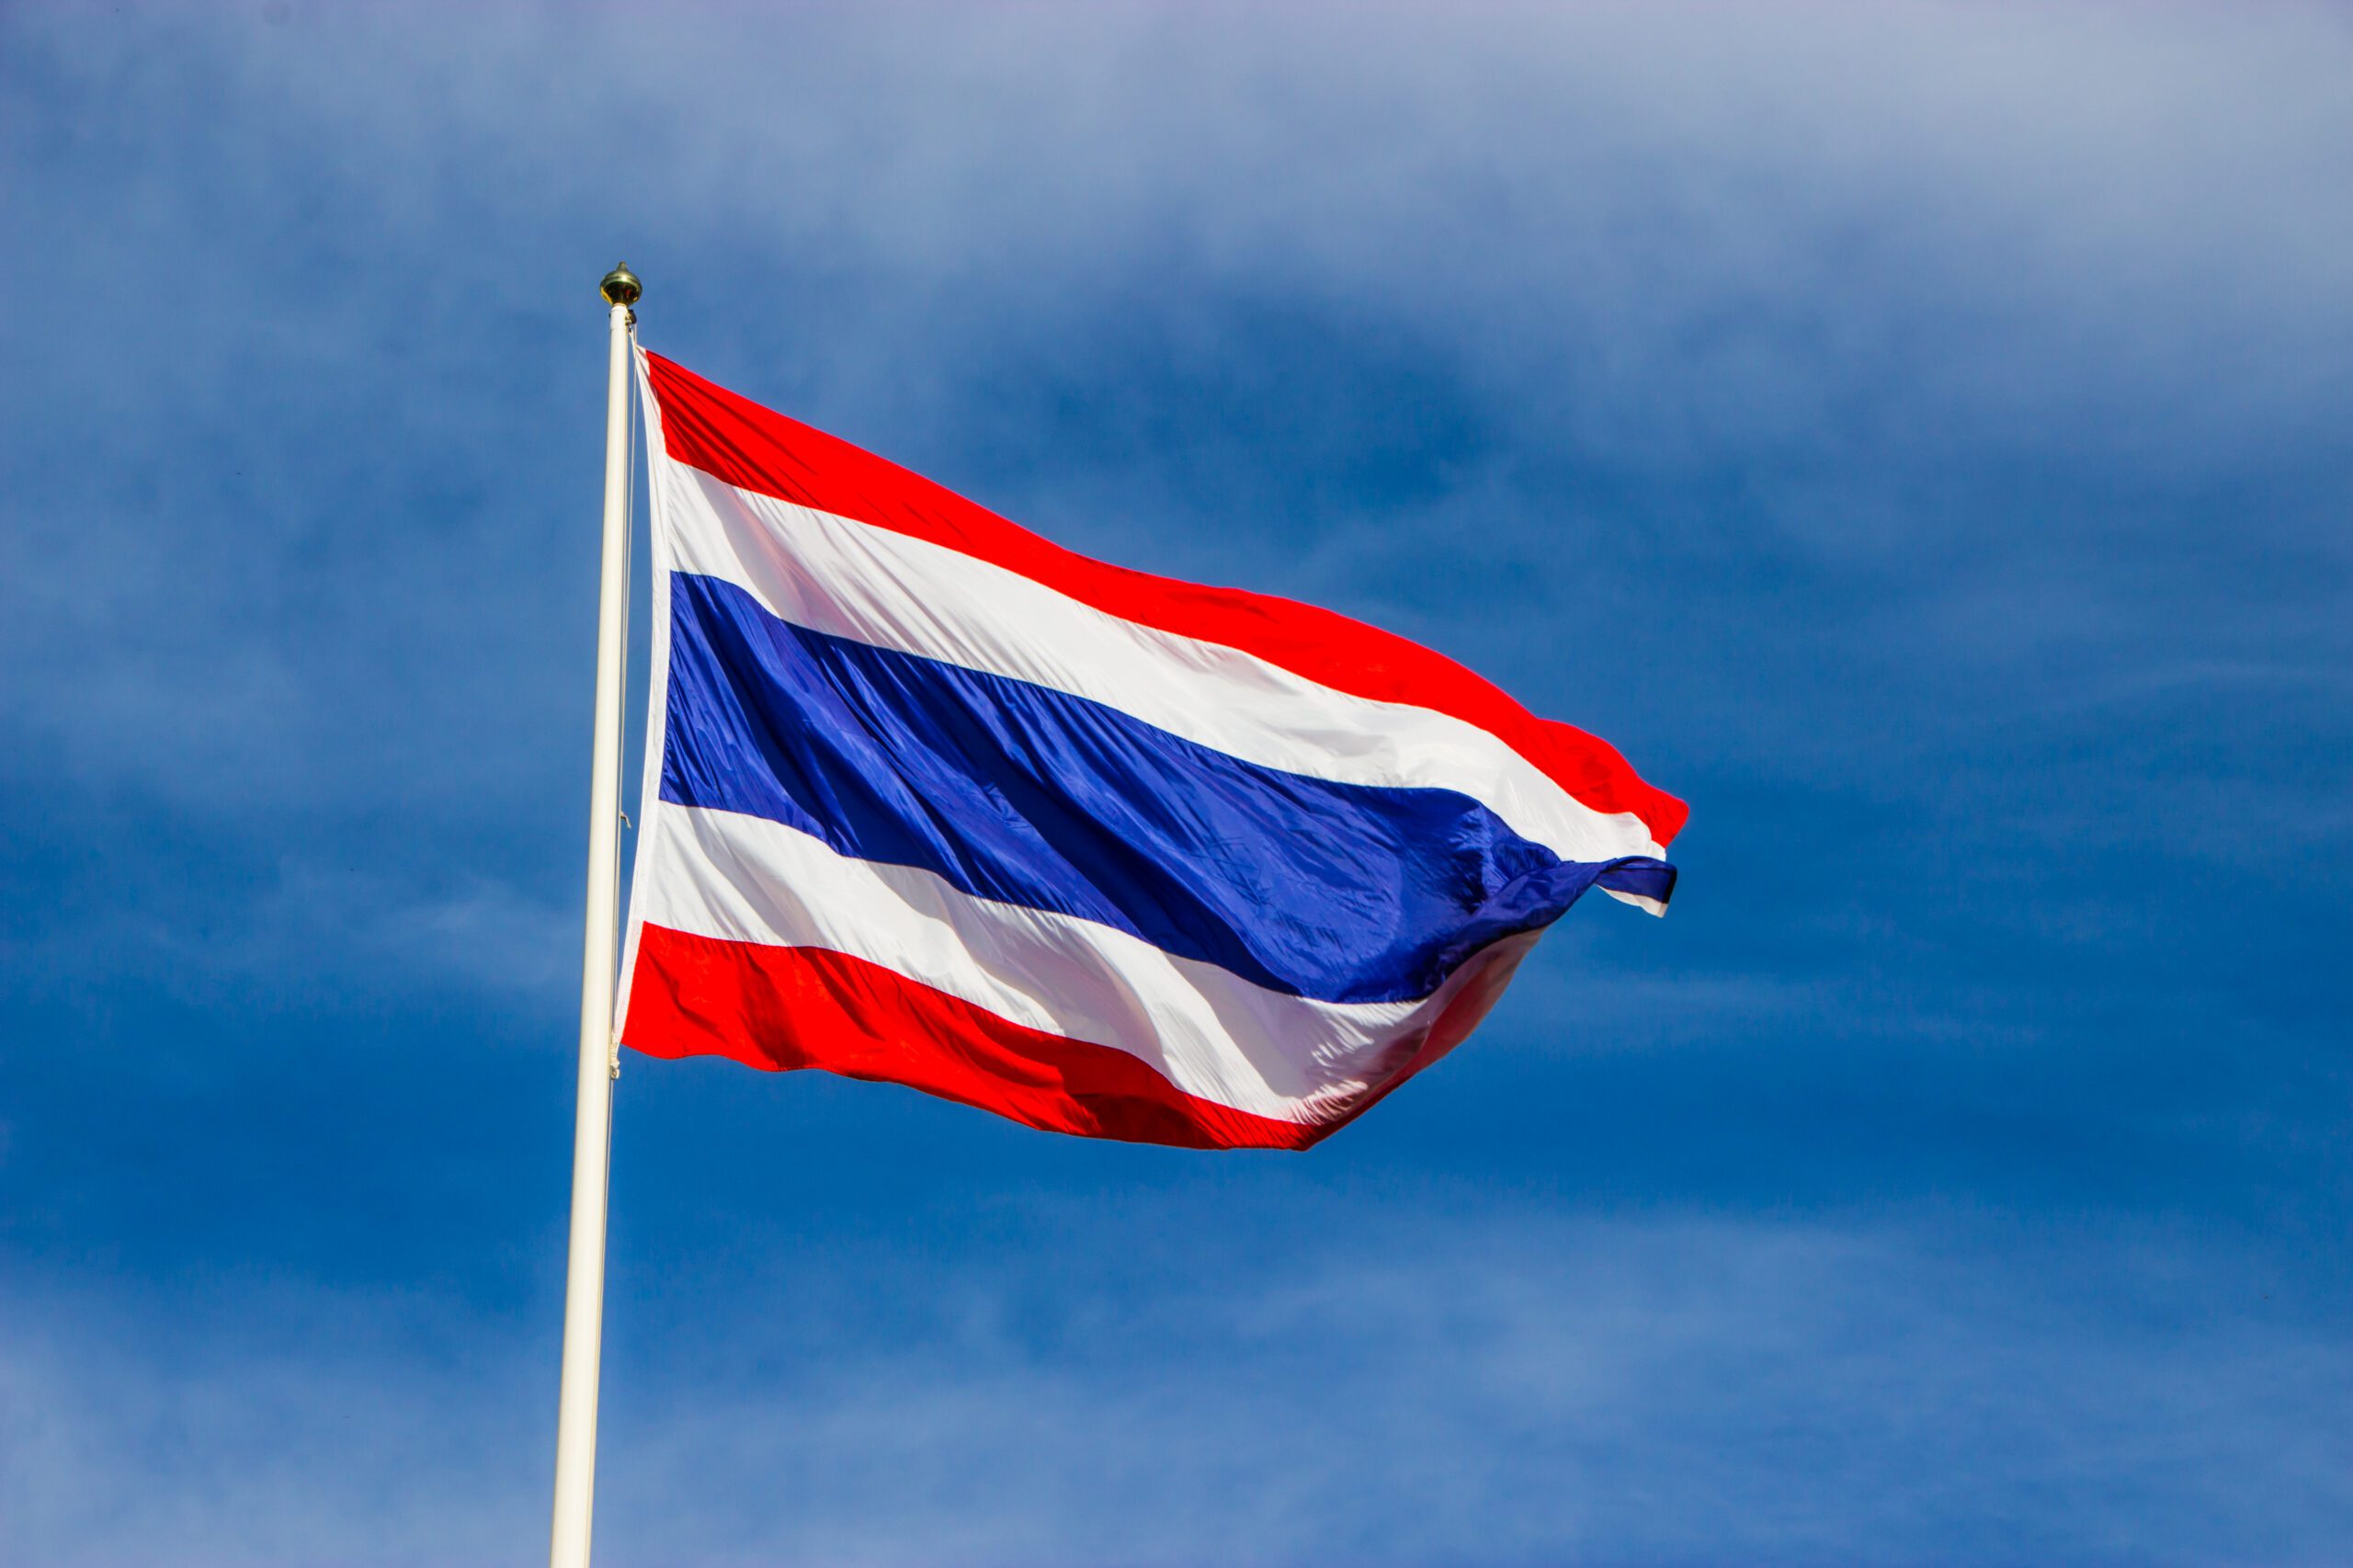 Bandeira da Tailândia